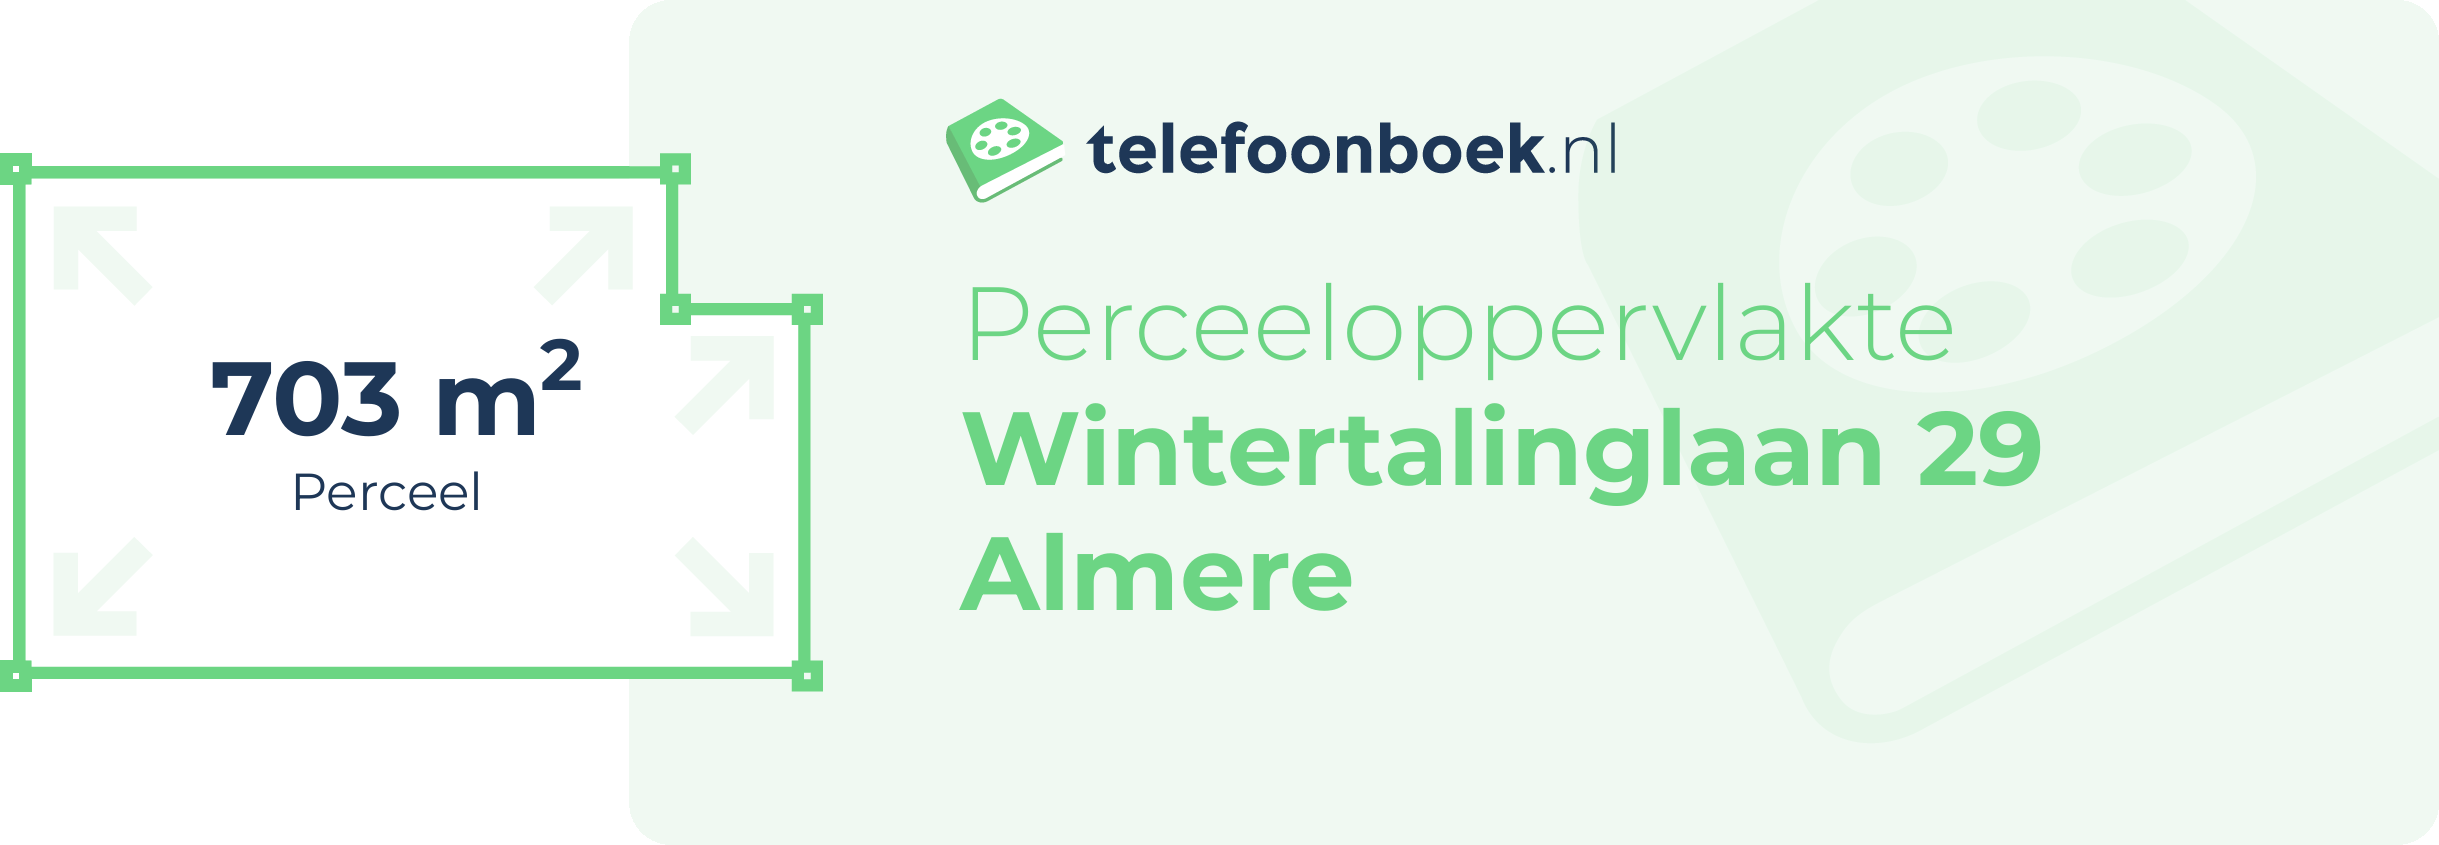 Perceeloppervlakte Wintertalinglaan 29 Almere